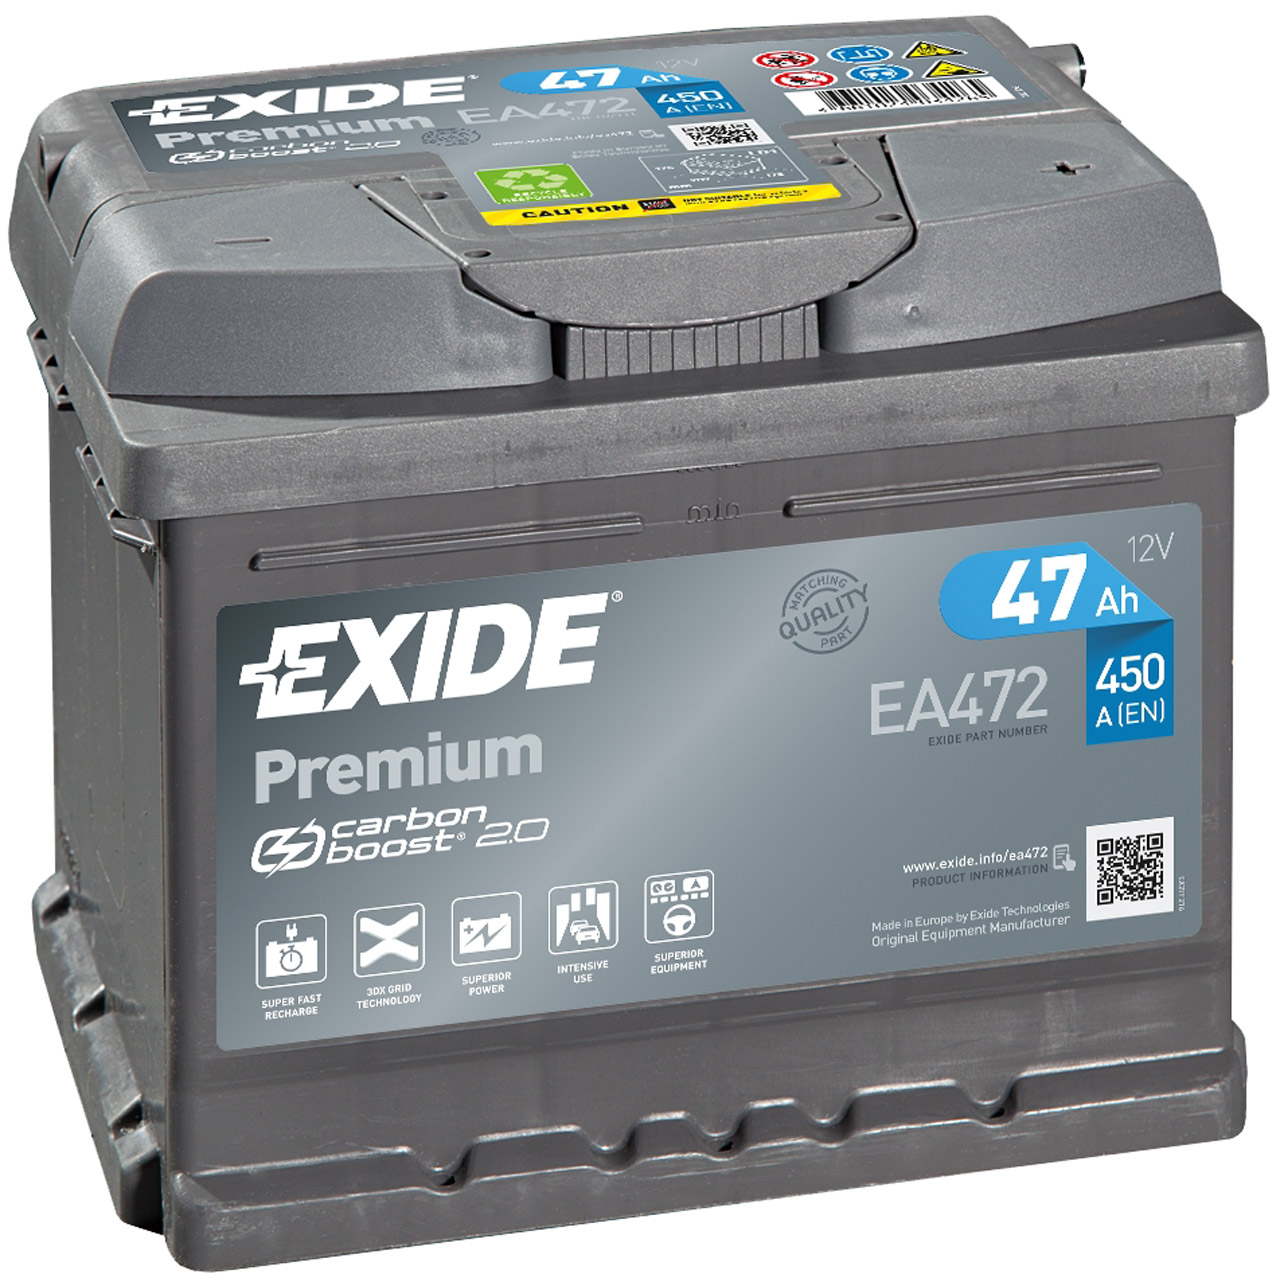 EXIDE EA472 PREMIUM Autobatterie Batterie Starterbatterie 12V 47Ah EN450A